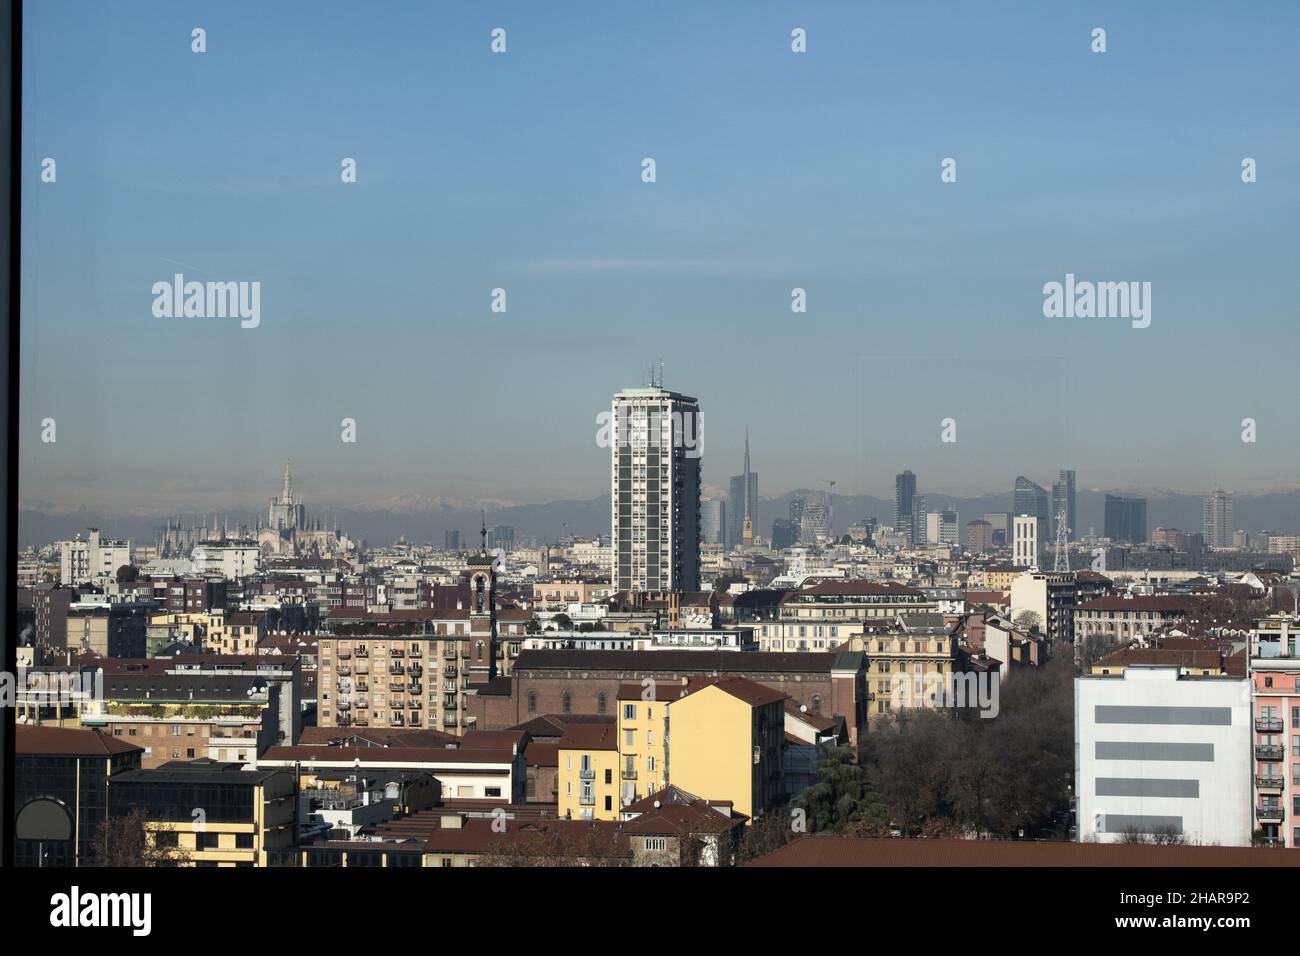 Mailand, Italien: Die Skyline der Stadt von den Fenstern des Turms der Fondazione Prada aus gesehen, das 60 Meter hohe Gebäude, das von Rem Koolhaas entworfen wurde Stockfoto